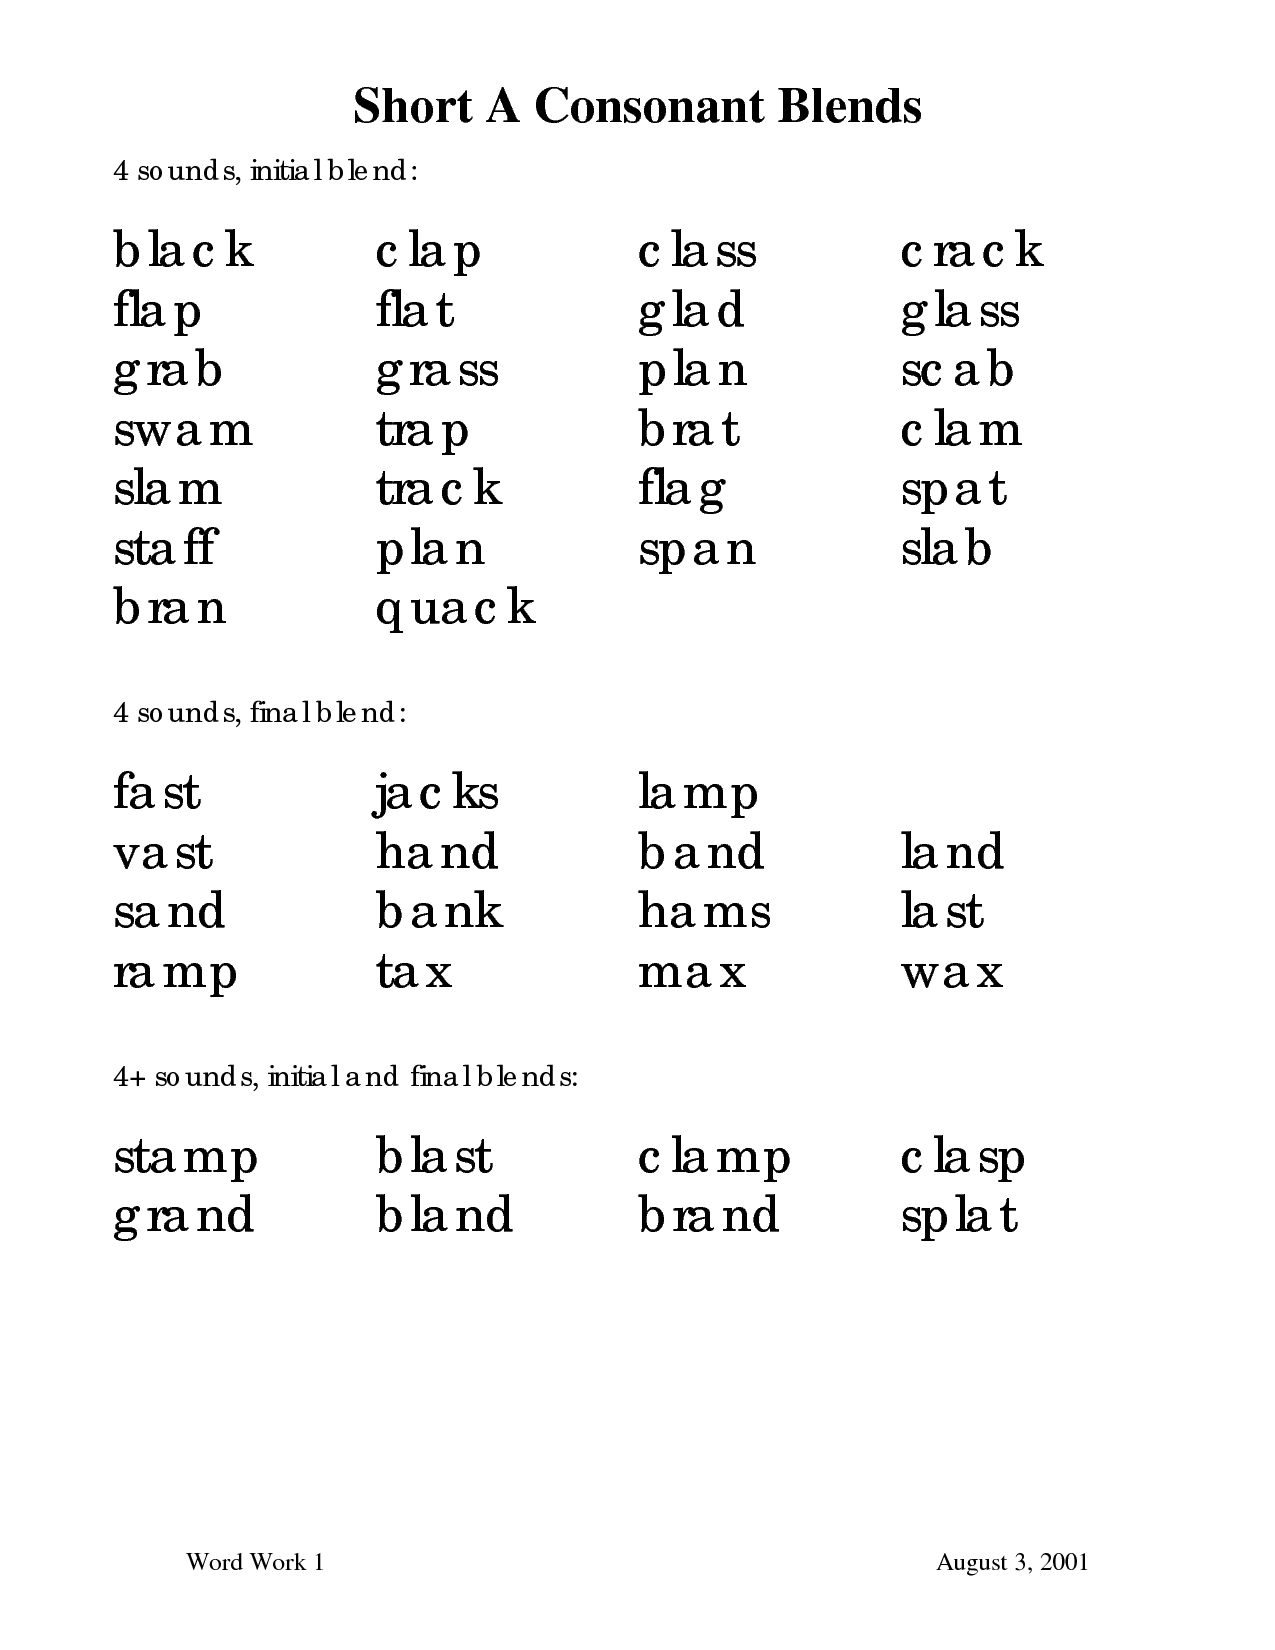 Short Vowels with Consonant Blends Worksheet Image